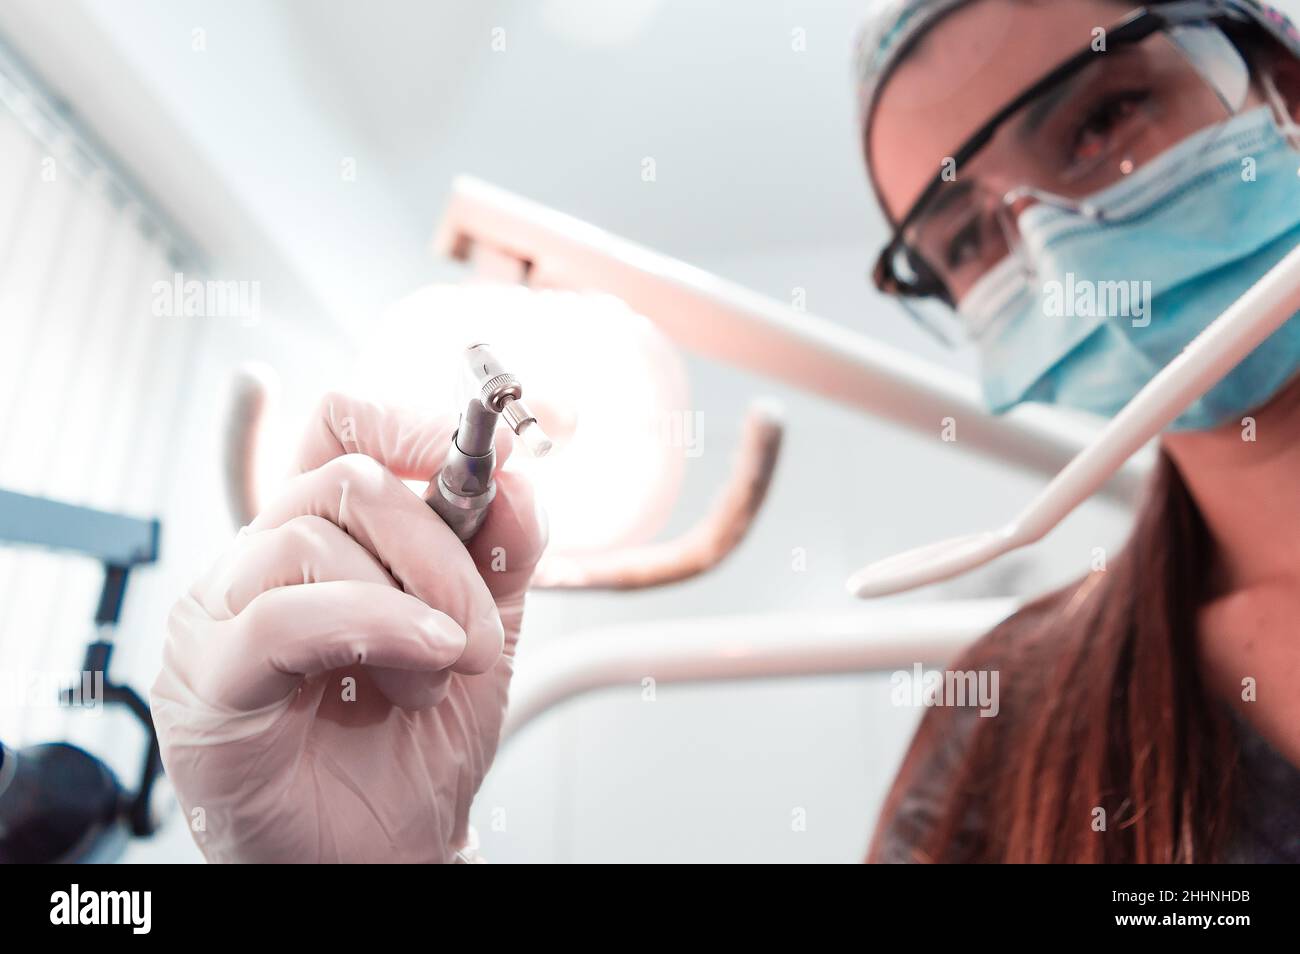 image observée du point de vue d'un patient dentaire, des mains d'une jeune fille et d'un dentiste professionnel, avec des gants en latex qui utilise une bosselure Banque D'Images